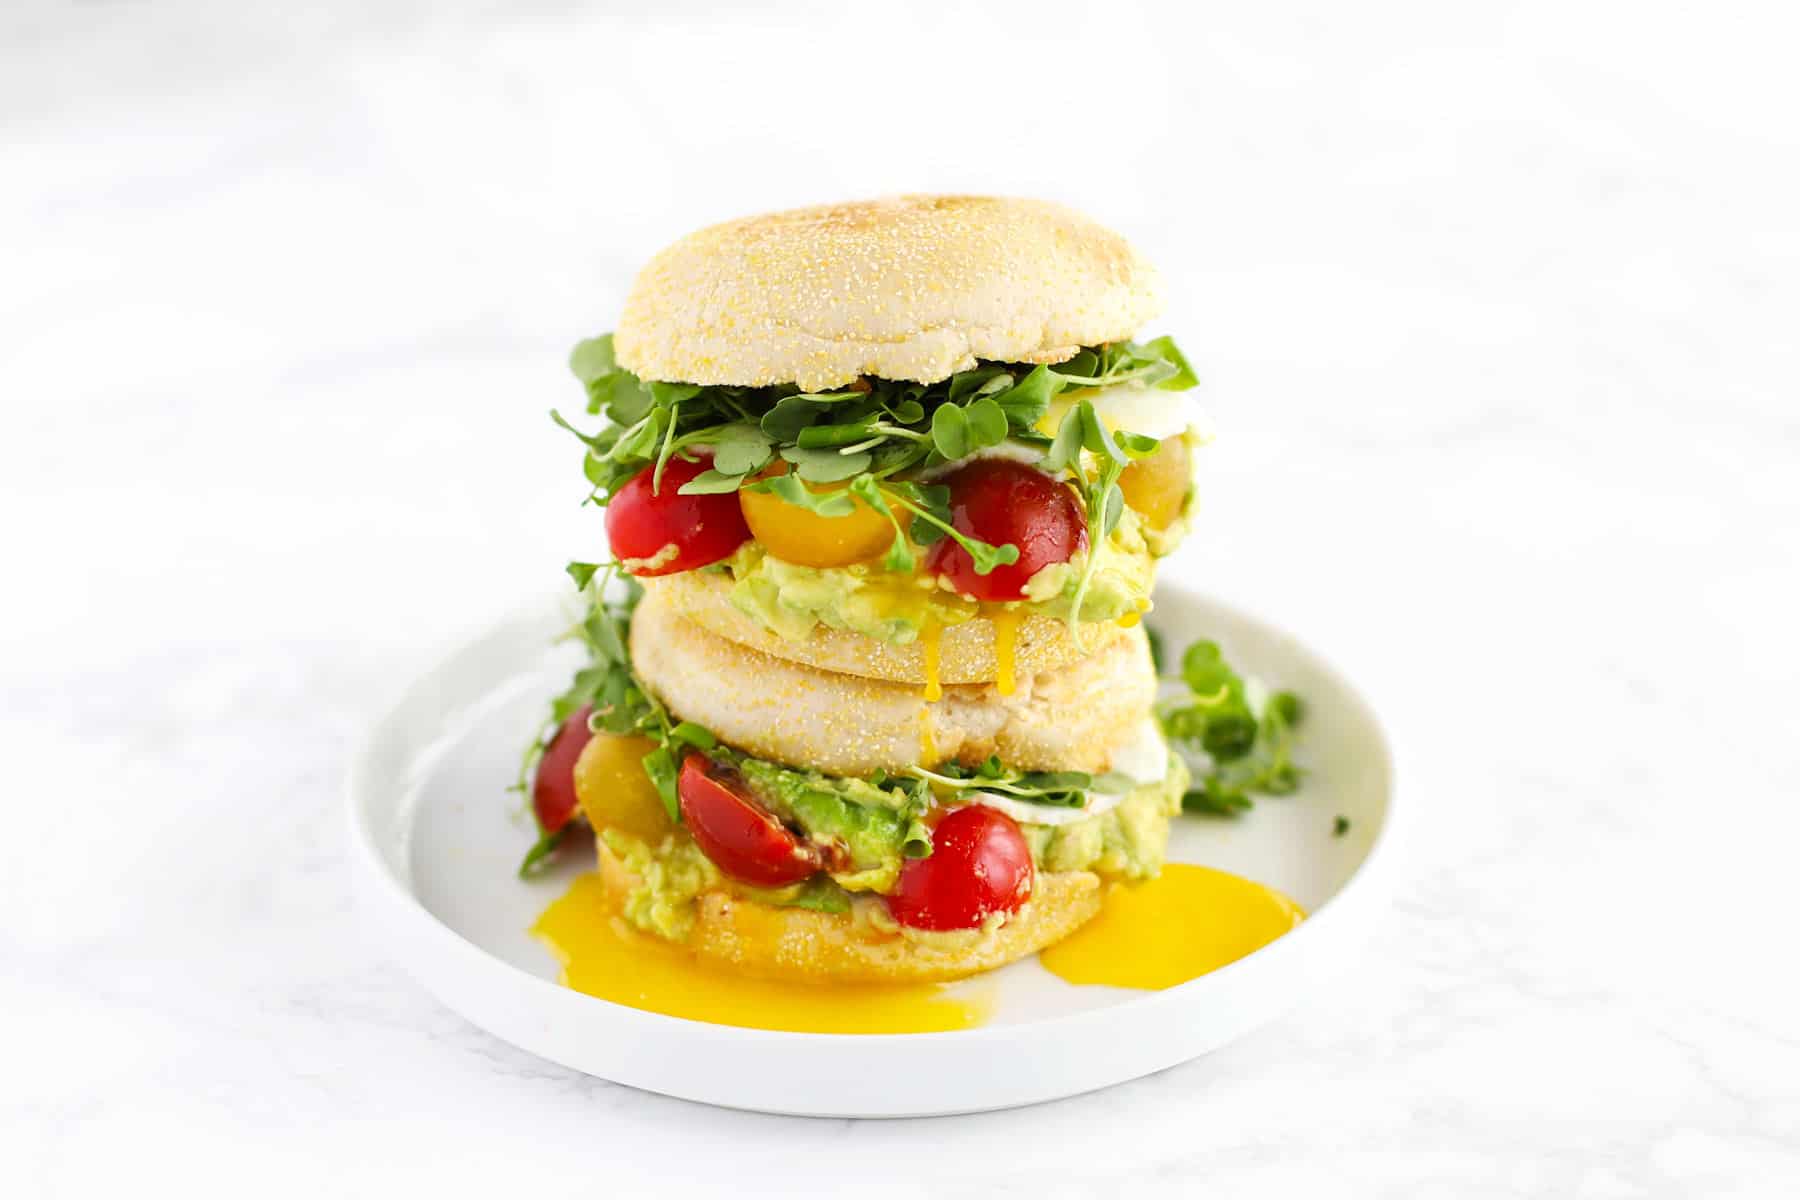 https://www.zestedlemon.com/wp-content/uploads/2019/02/Easy-Breakfast-Sandwich-Recipe-Card.jpg